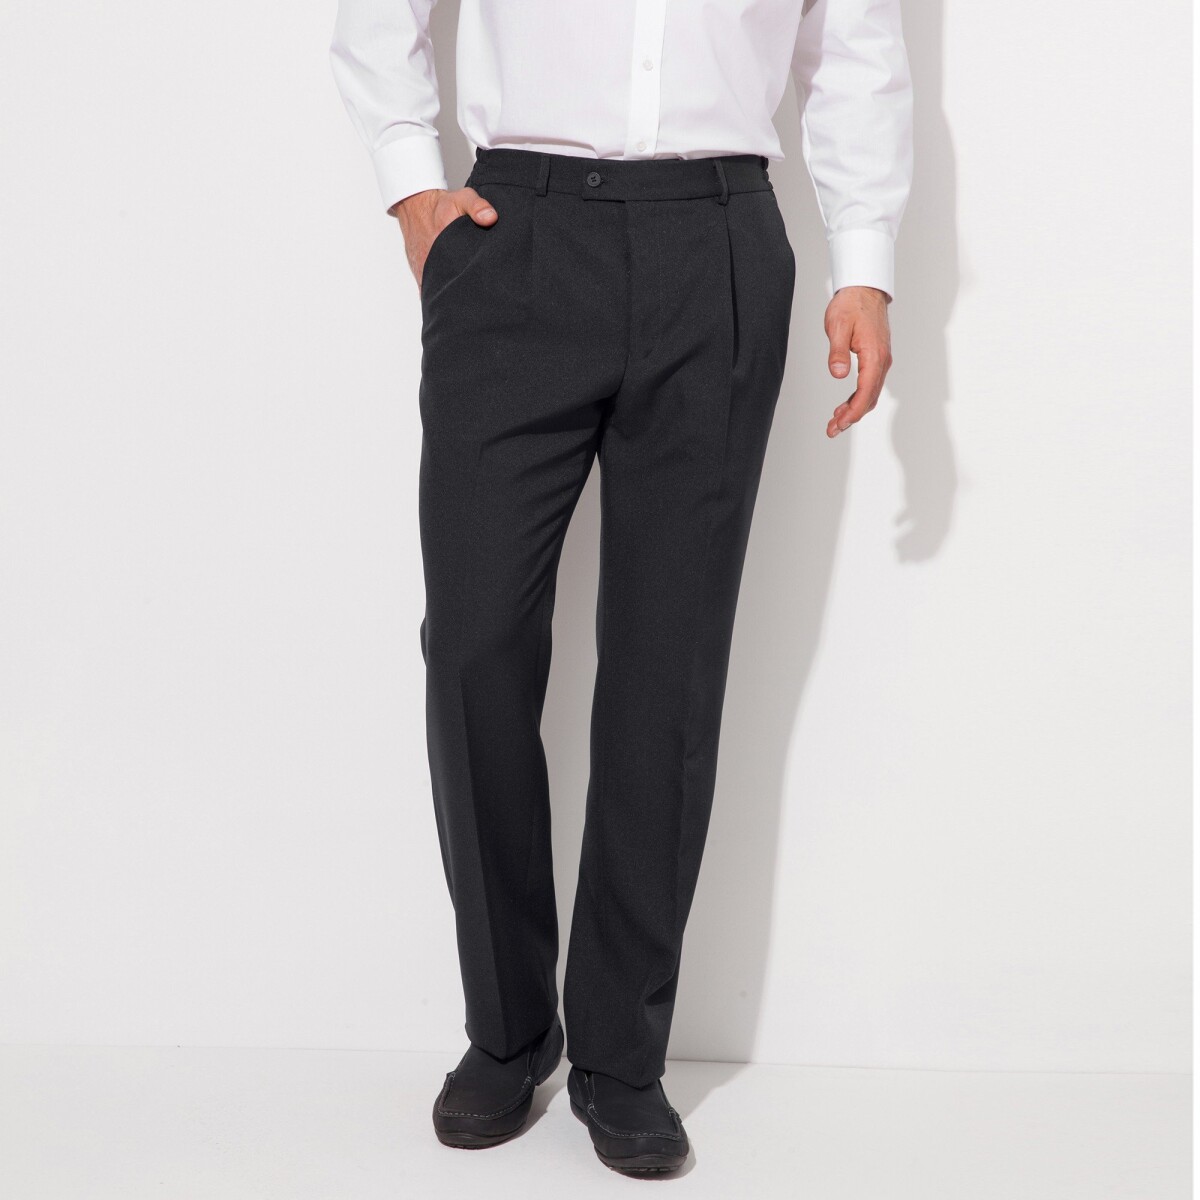 Nohavice s pružným pásom, polyester vlna sivá antracitová 42